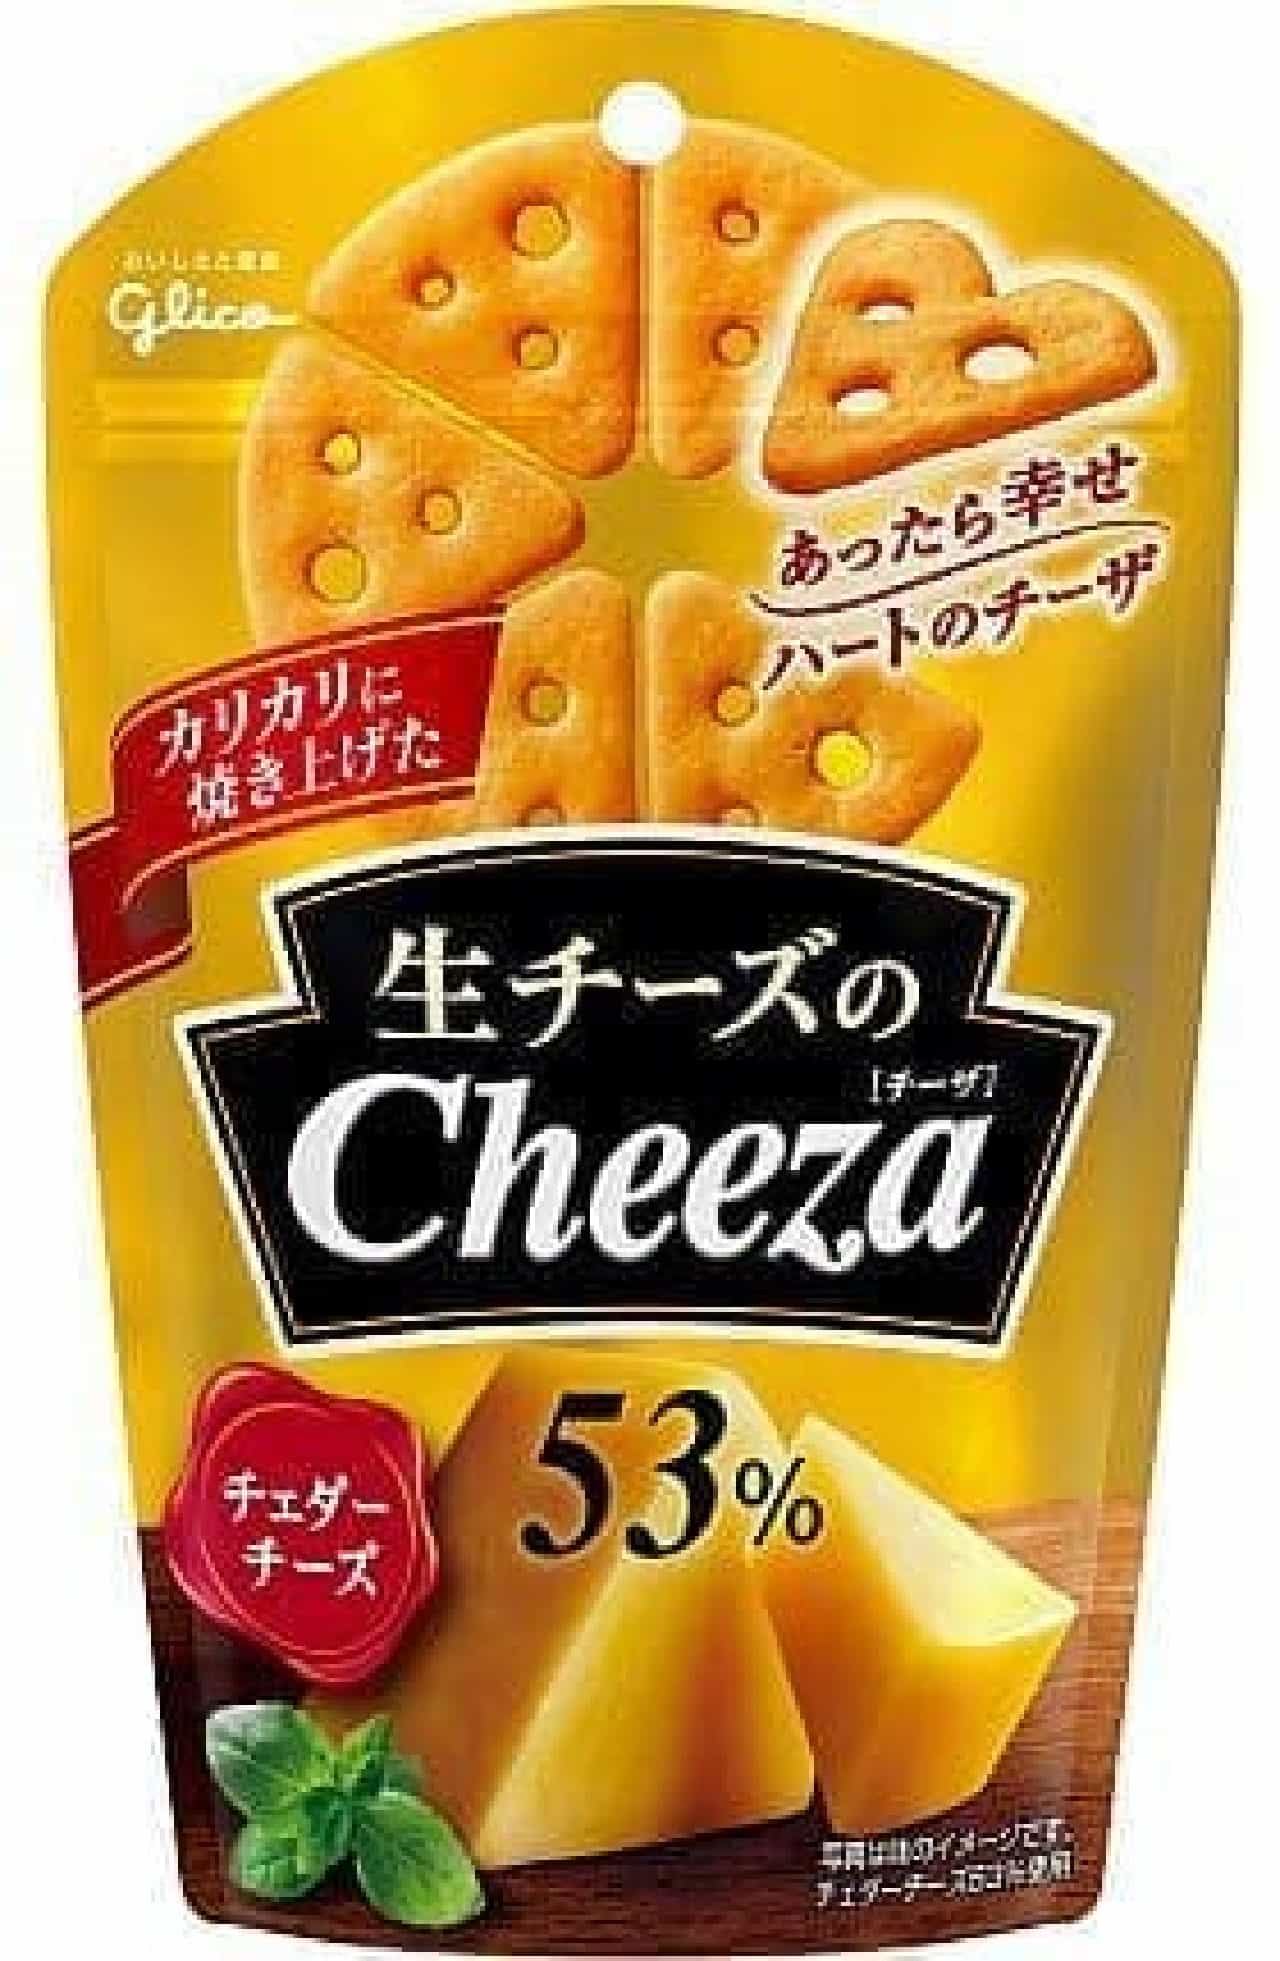 Ezaki Glico "Raw Cheese Cheeza"